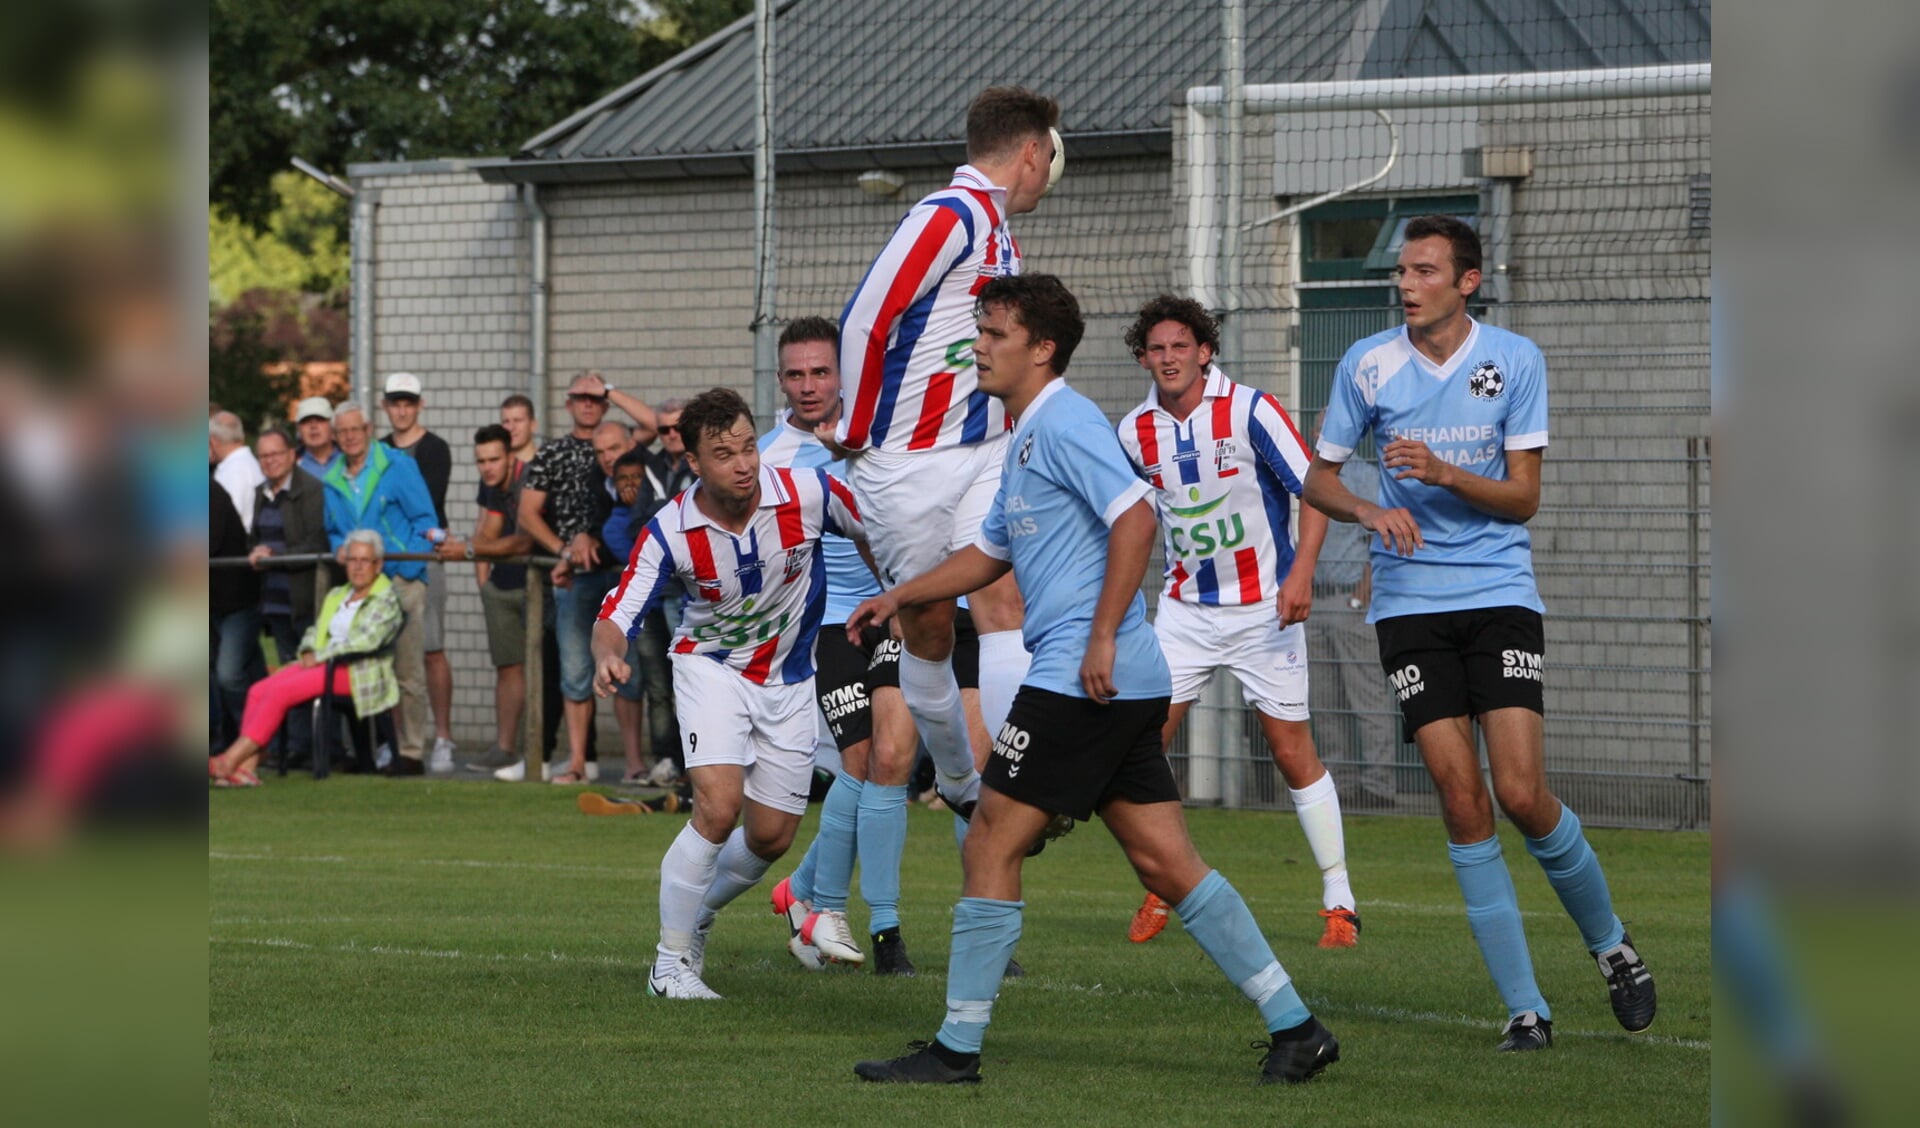 UDI'19 wint Ton van Lanen cup door winst op Gemert (Foto's Peter Kuijpers) Video (Gerard Beekmans)